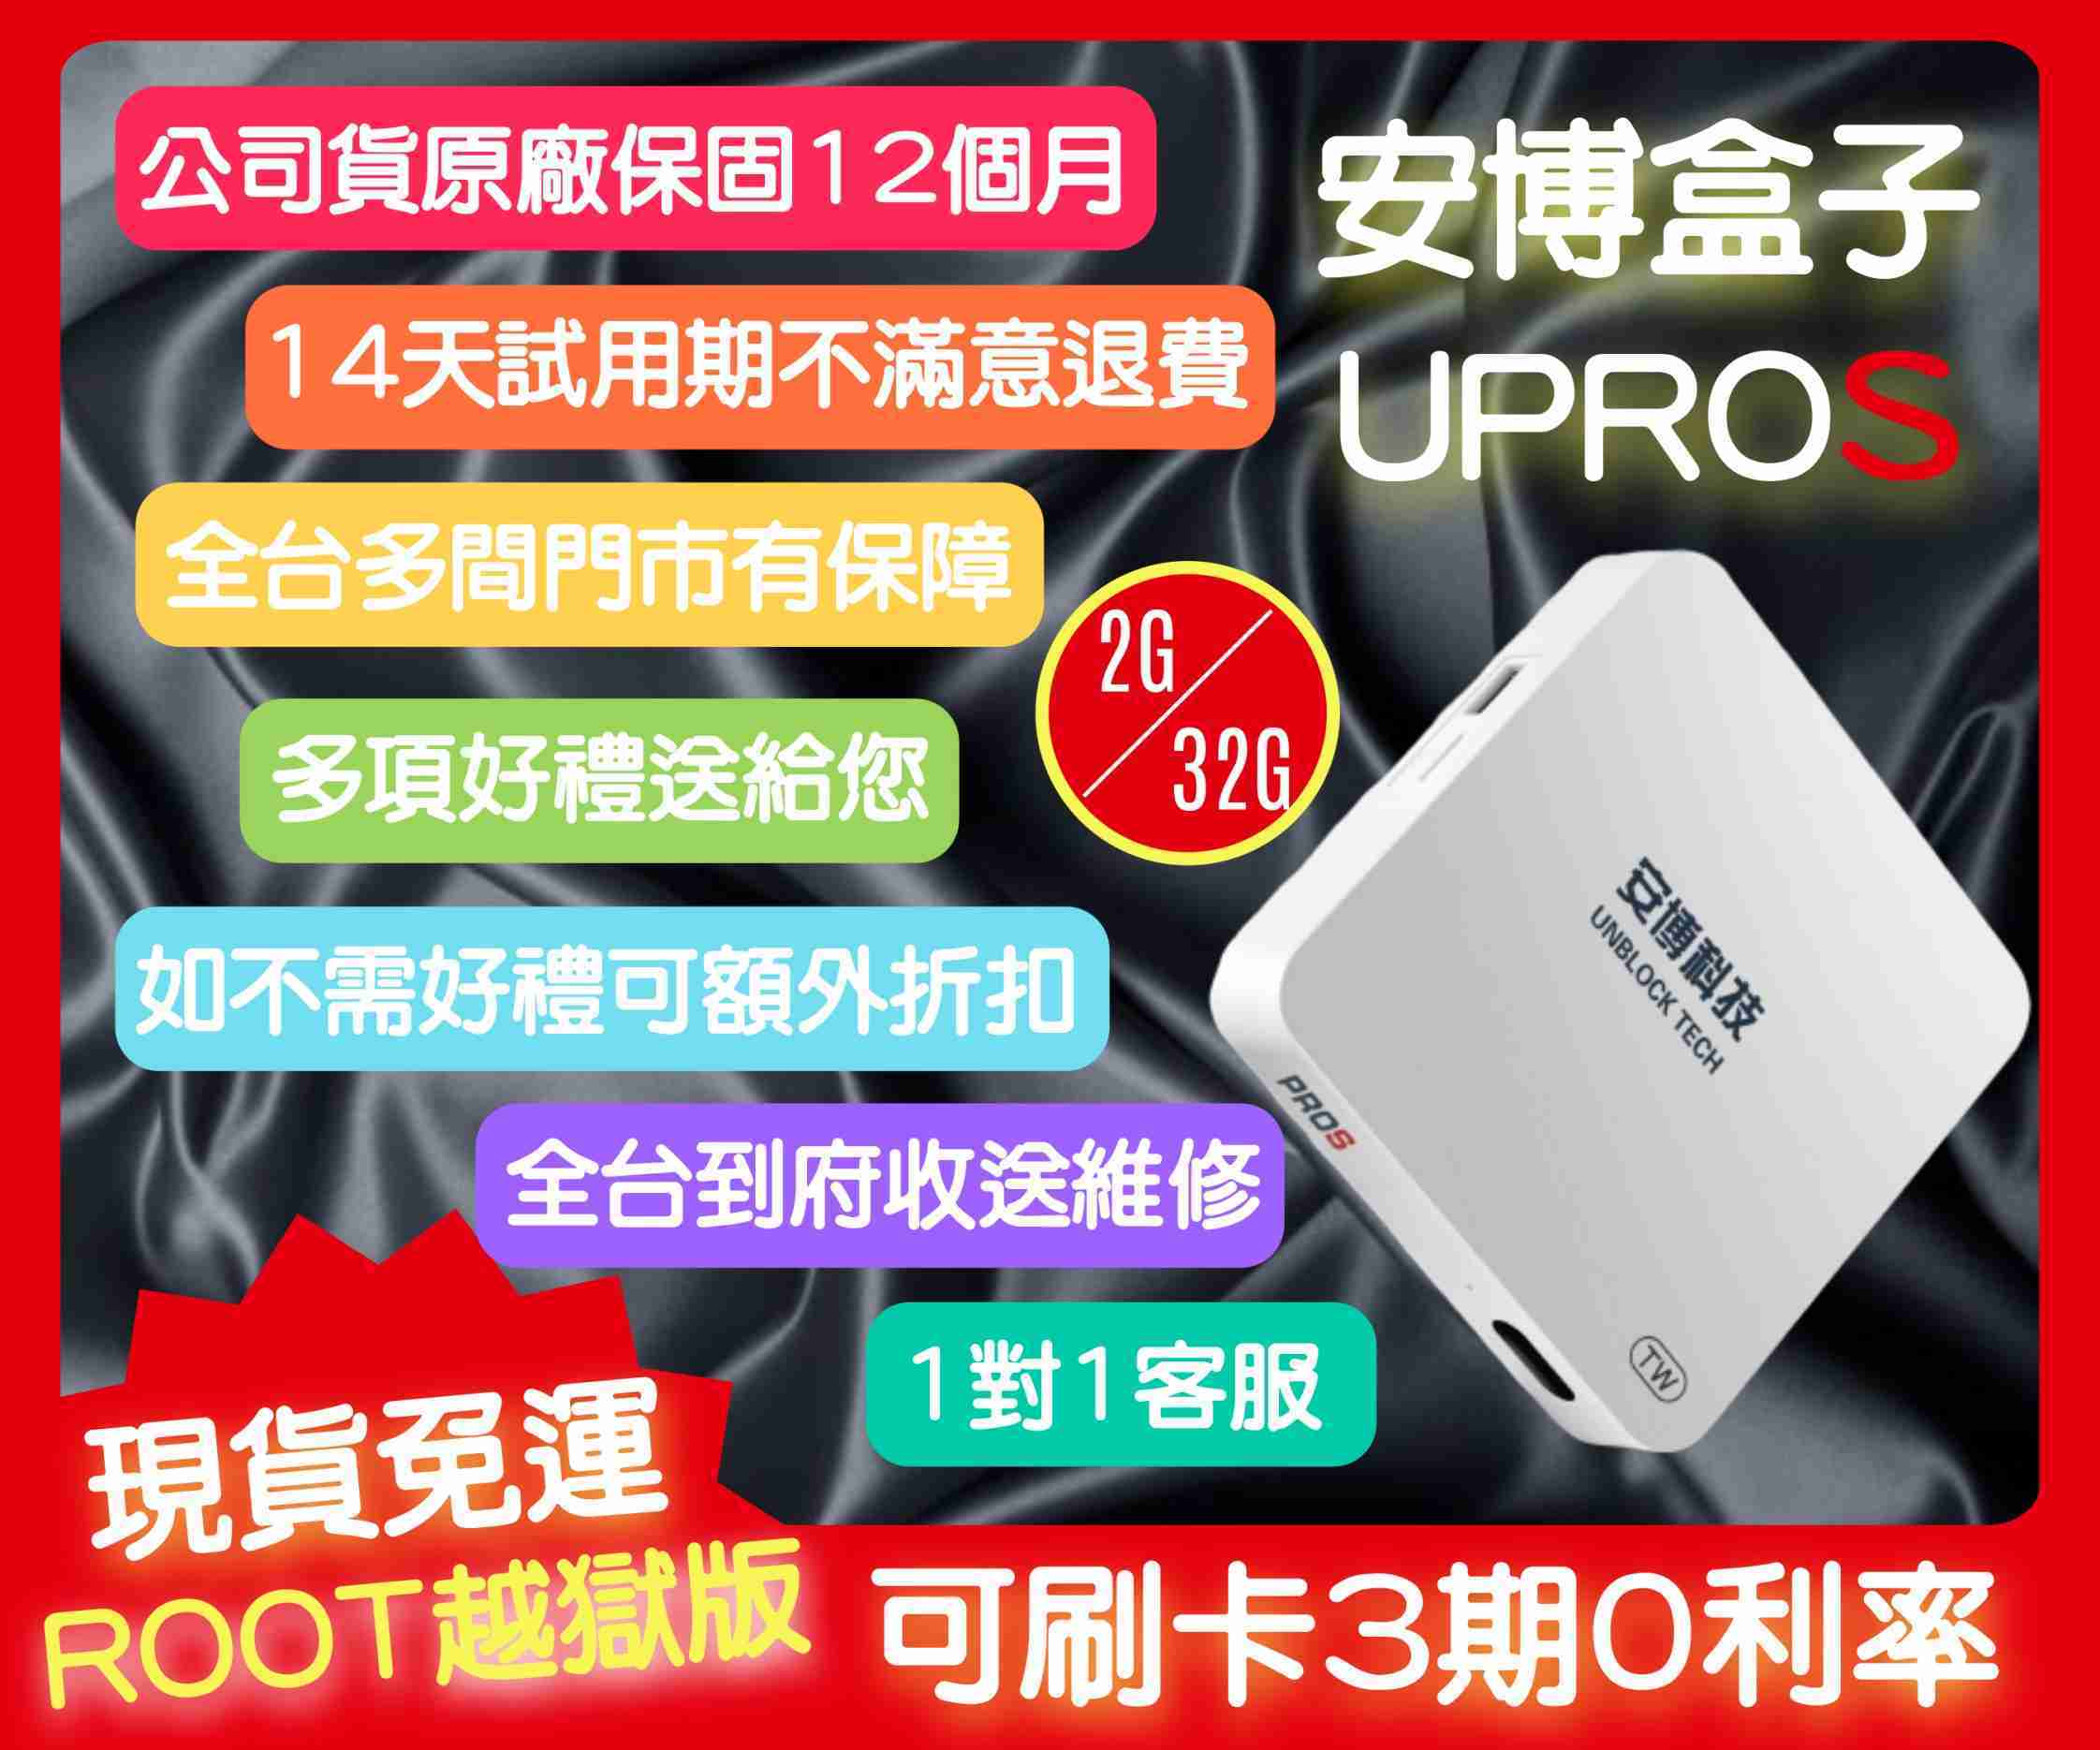 【艾爾巴數位】享14天試用 U-PROS 安博盒子 X9 2G+32G 台灣純淨版 贈品價~實體店面